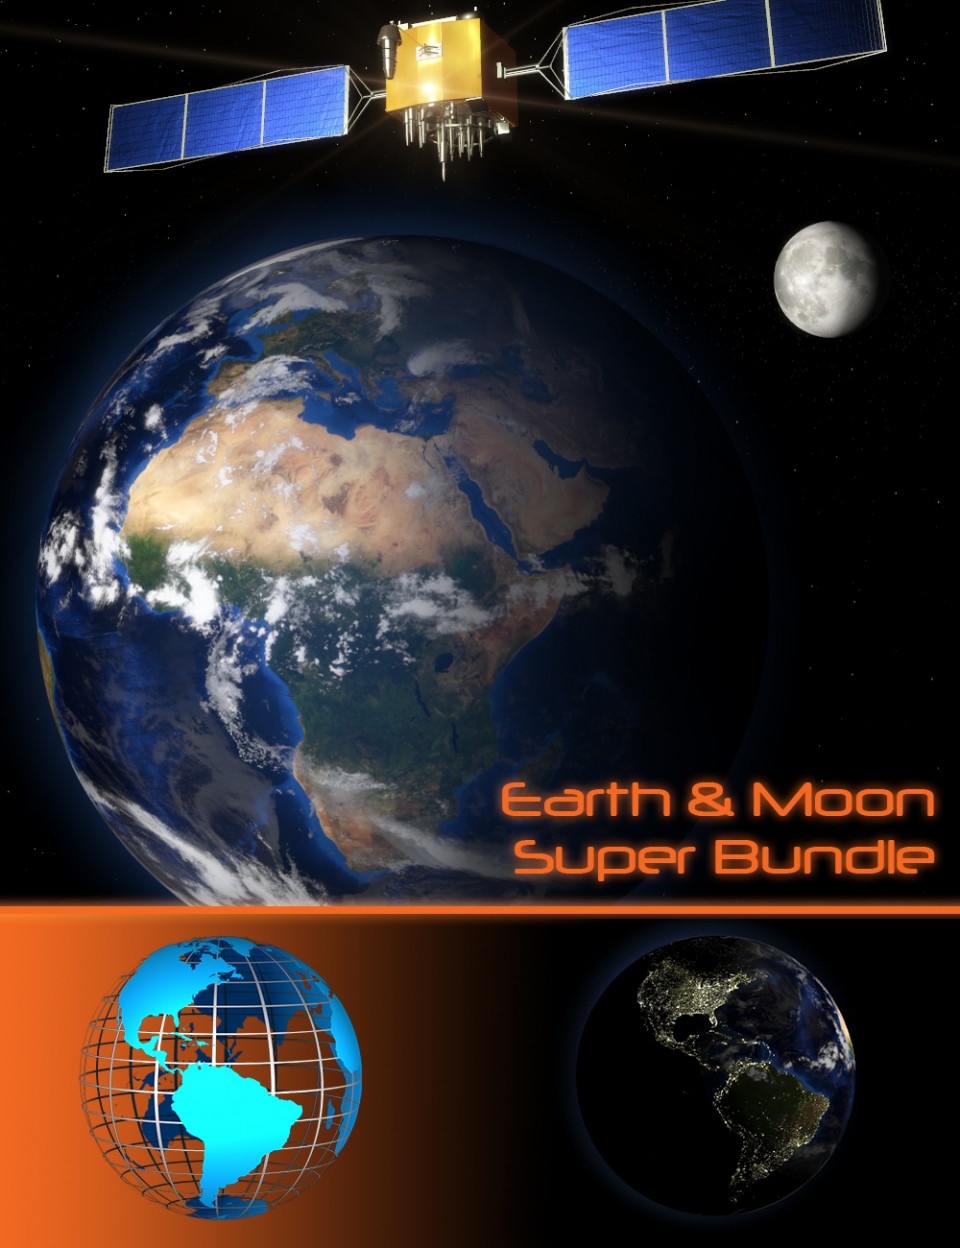 Earth & Moon Super Bundle